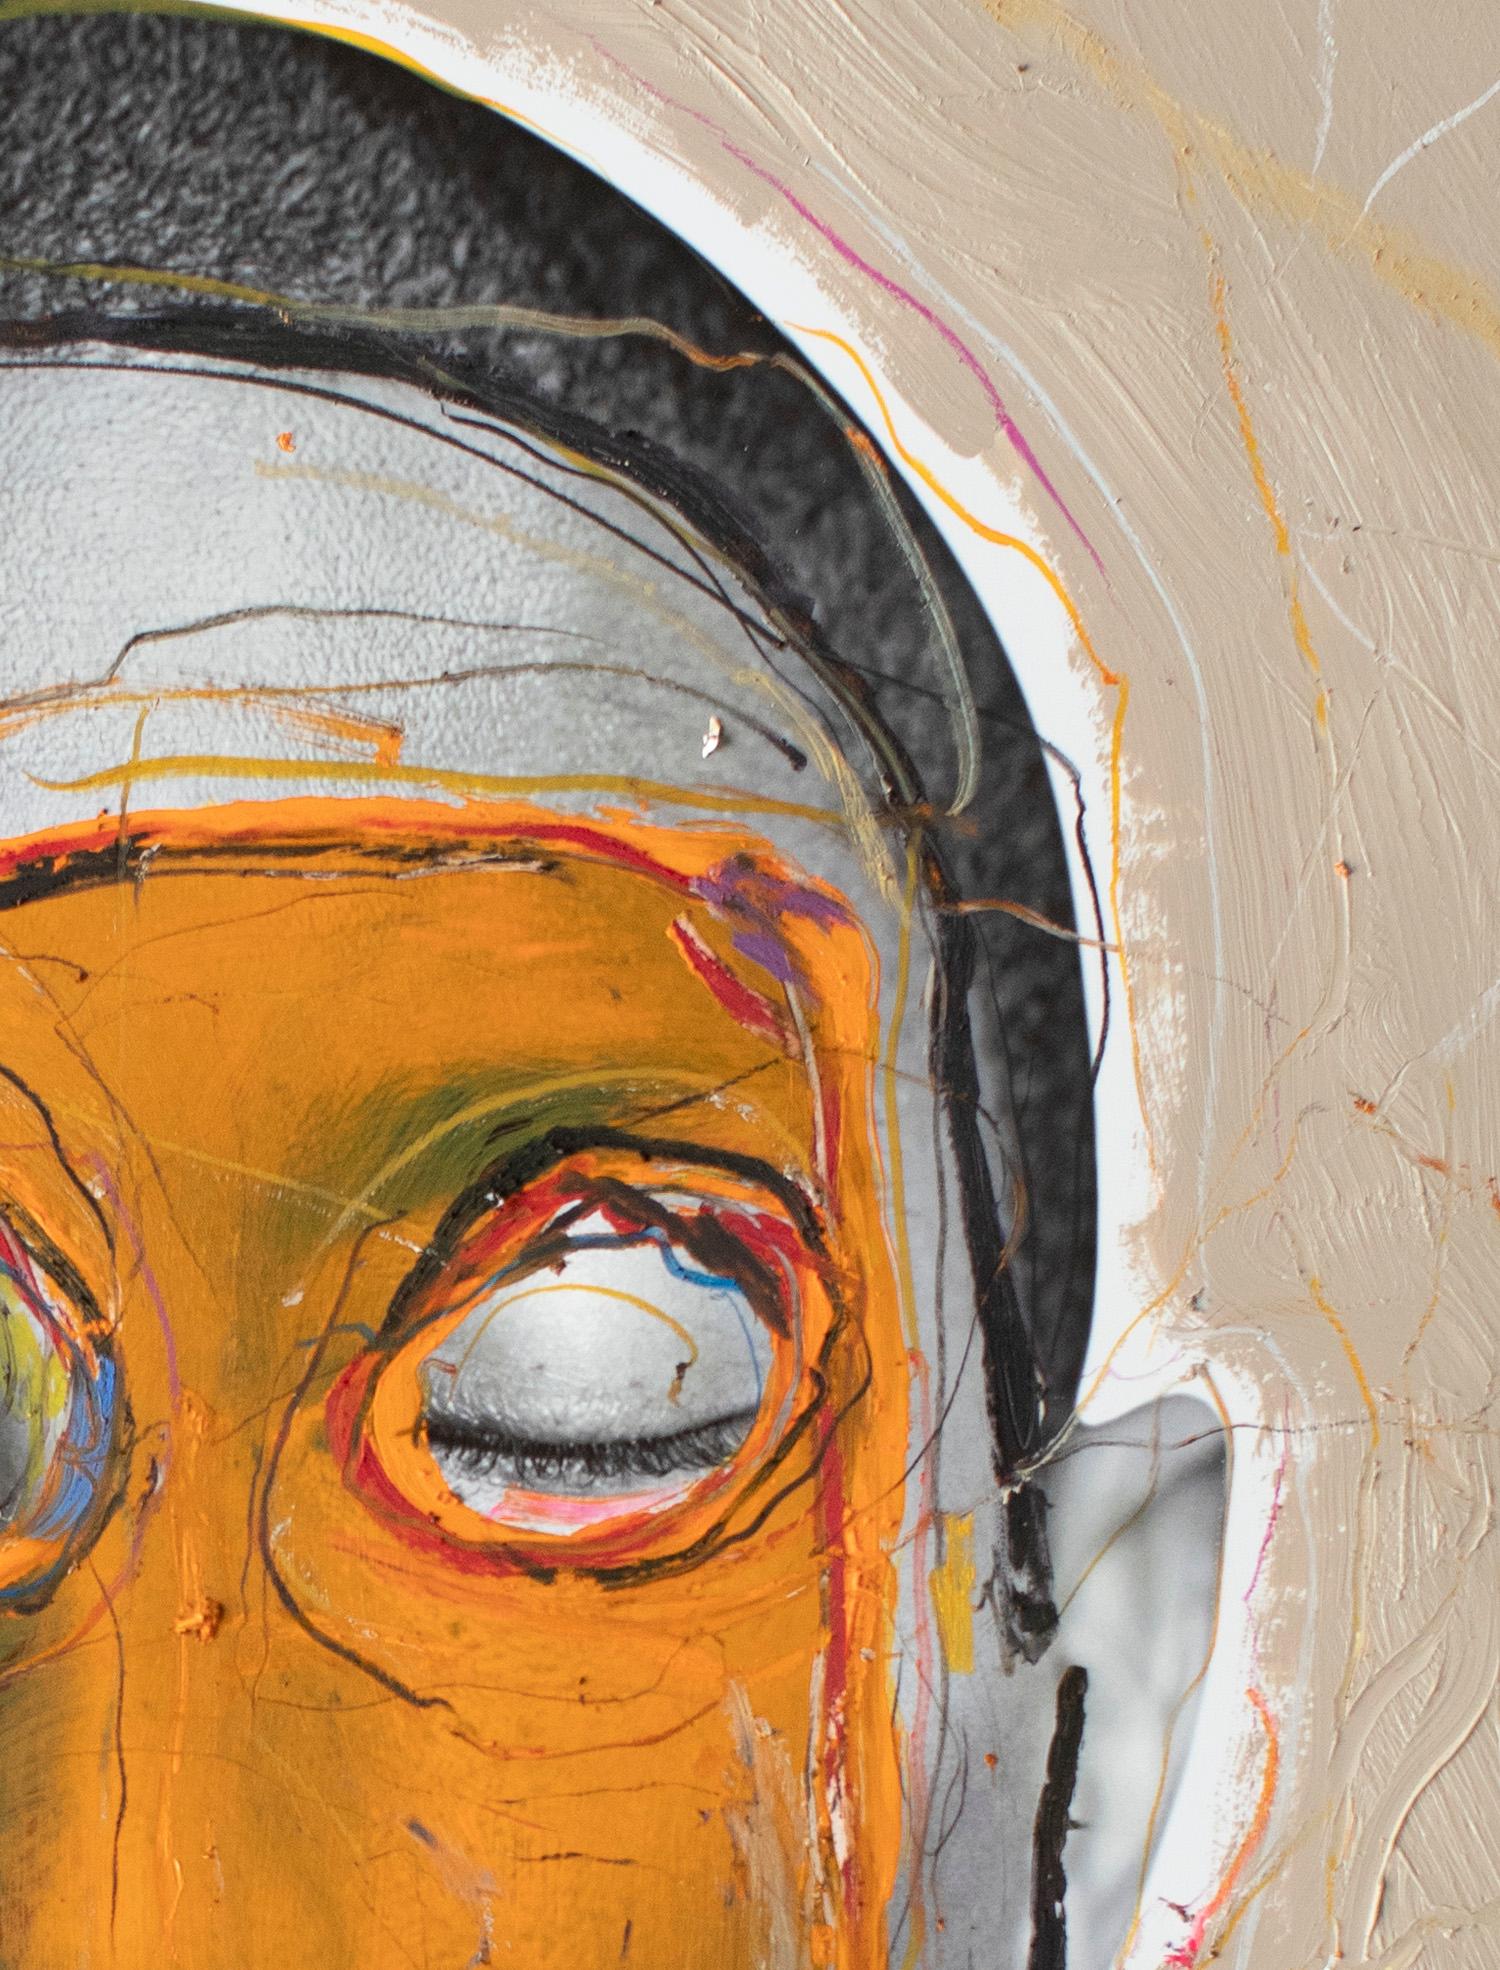 Autre Moi, portrait de Pharrell Williams (encadré) 2020, par Hunter & Gatti
Acrylique et pastel à l'huile sur impression pigmentaire
Taille de l'image : 76 cm. H x 61 cm. W
Taille encadrée : 90,5 cm. H x 82,5 cm. L x 5 cm. D
Exemplaire unique.

Dans